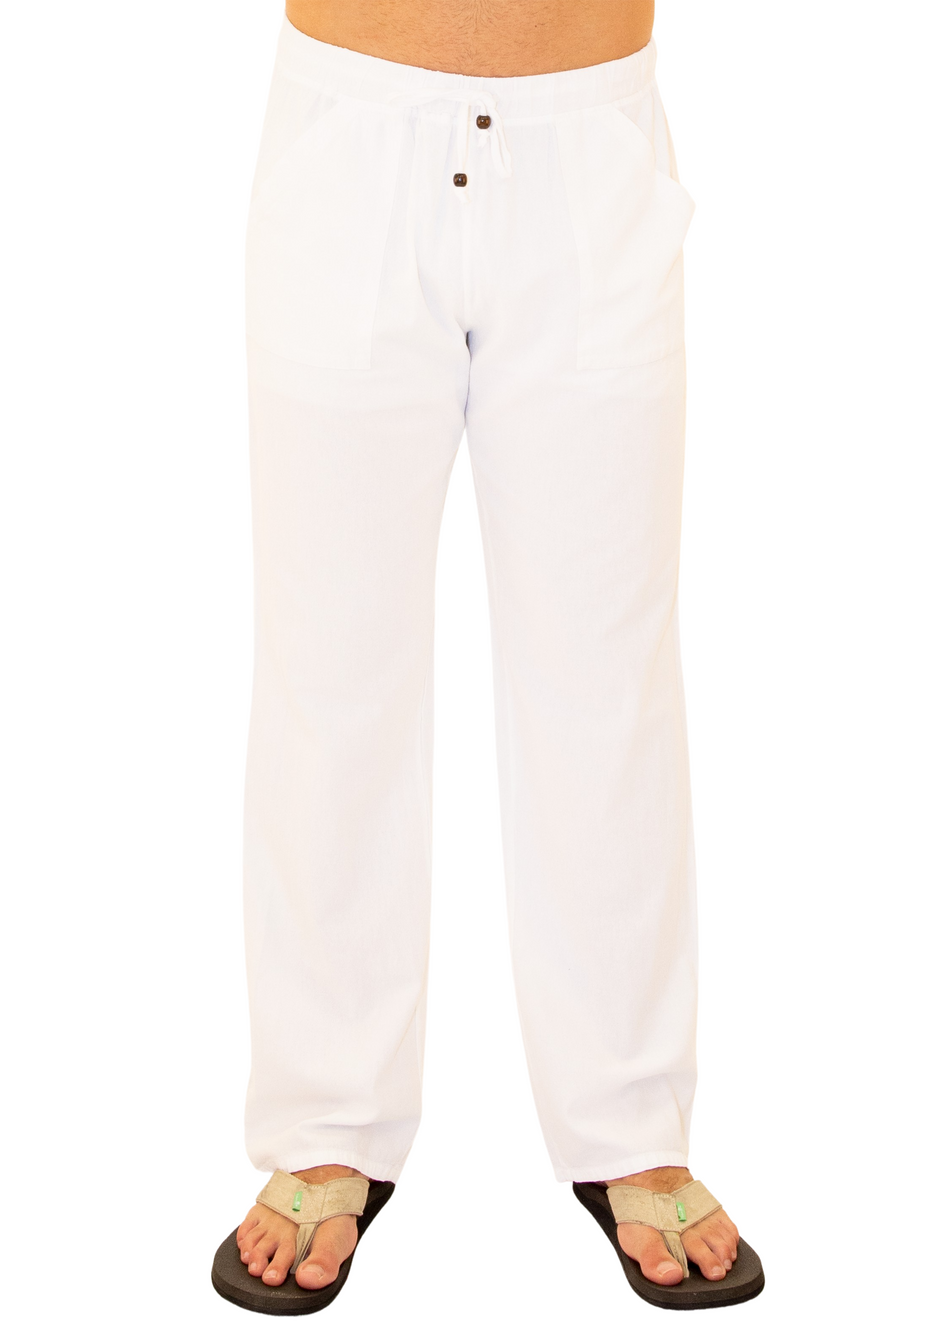 GZ1010 - White Cotton Drawstring Waist Pants